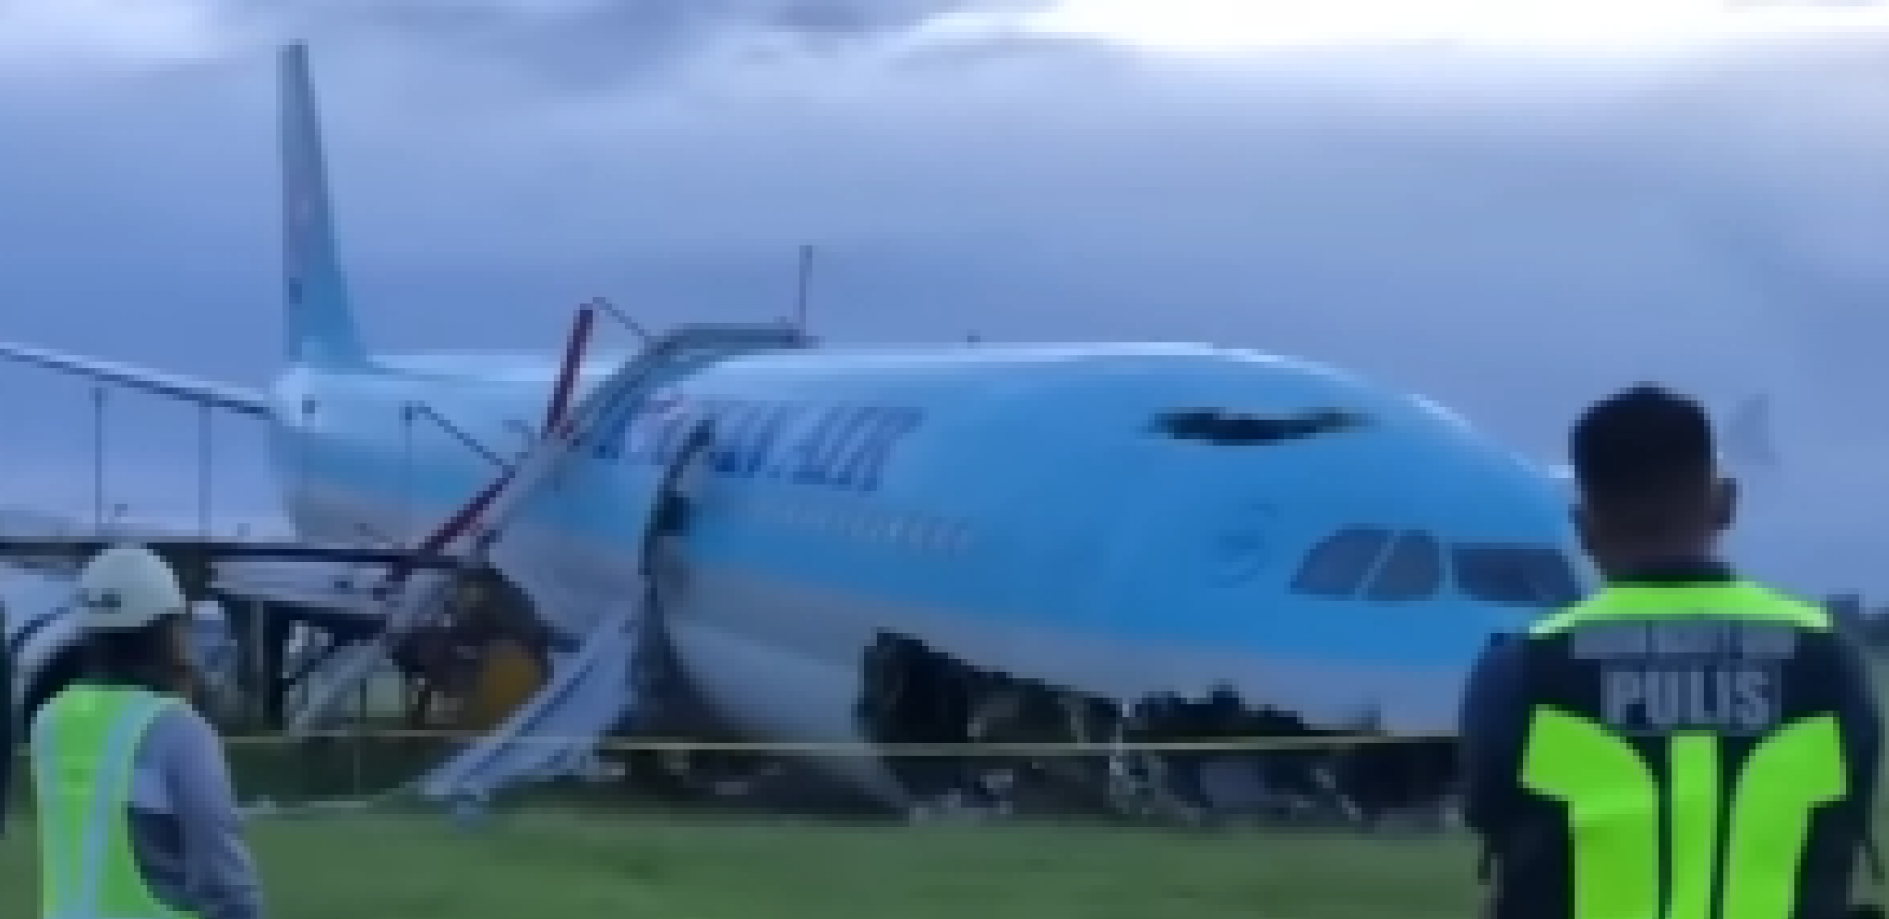 DRAMA NA OSTRVU MAKTAN Avion promašio pistu prilikom sletanja (VIDEO)